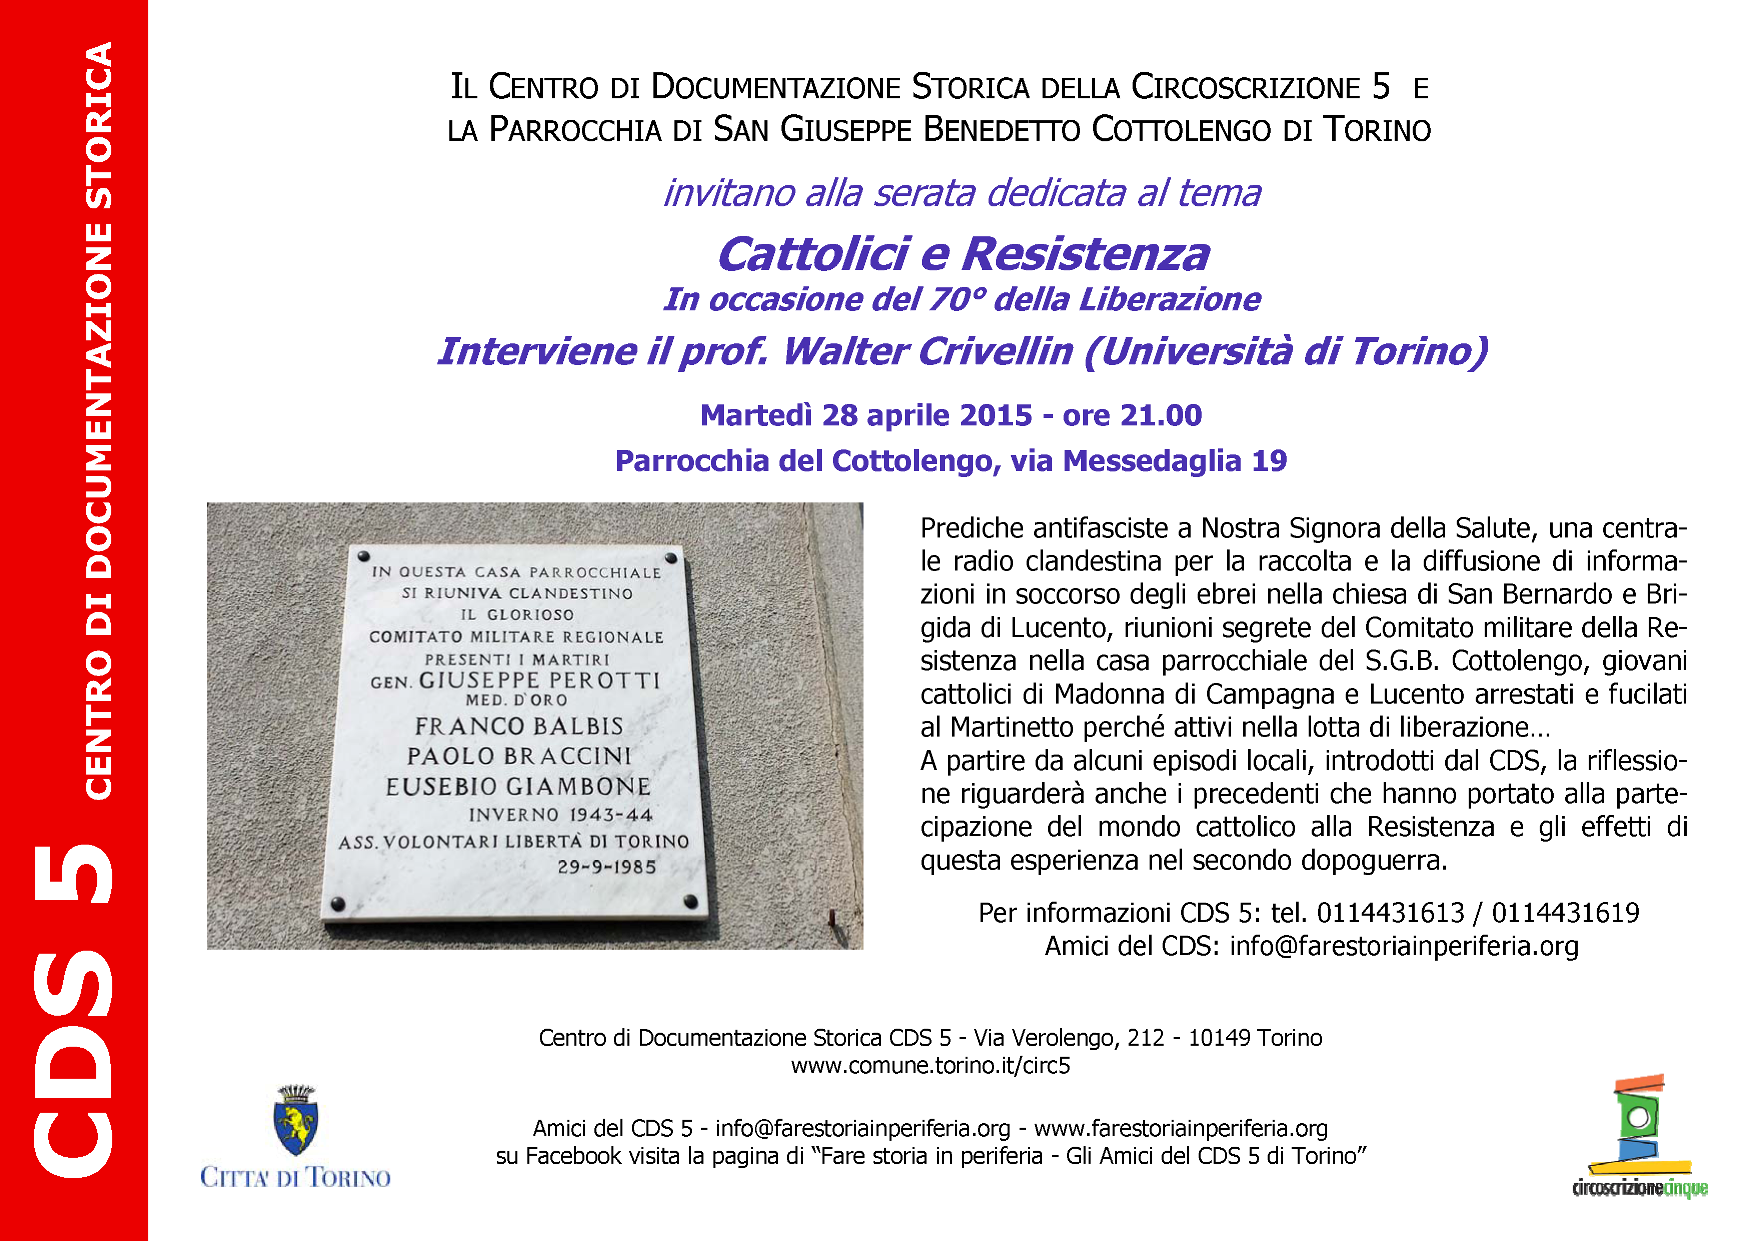 CDS-Volantino Cattolici e Resistenza per i 70 anni Liberazione 28-04-2015